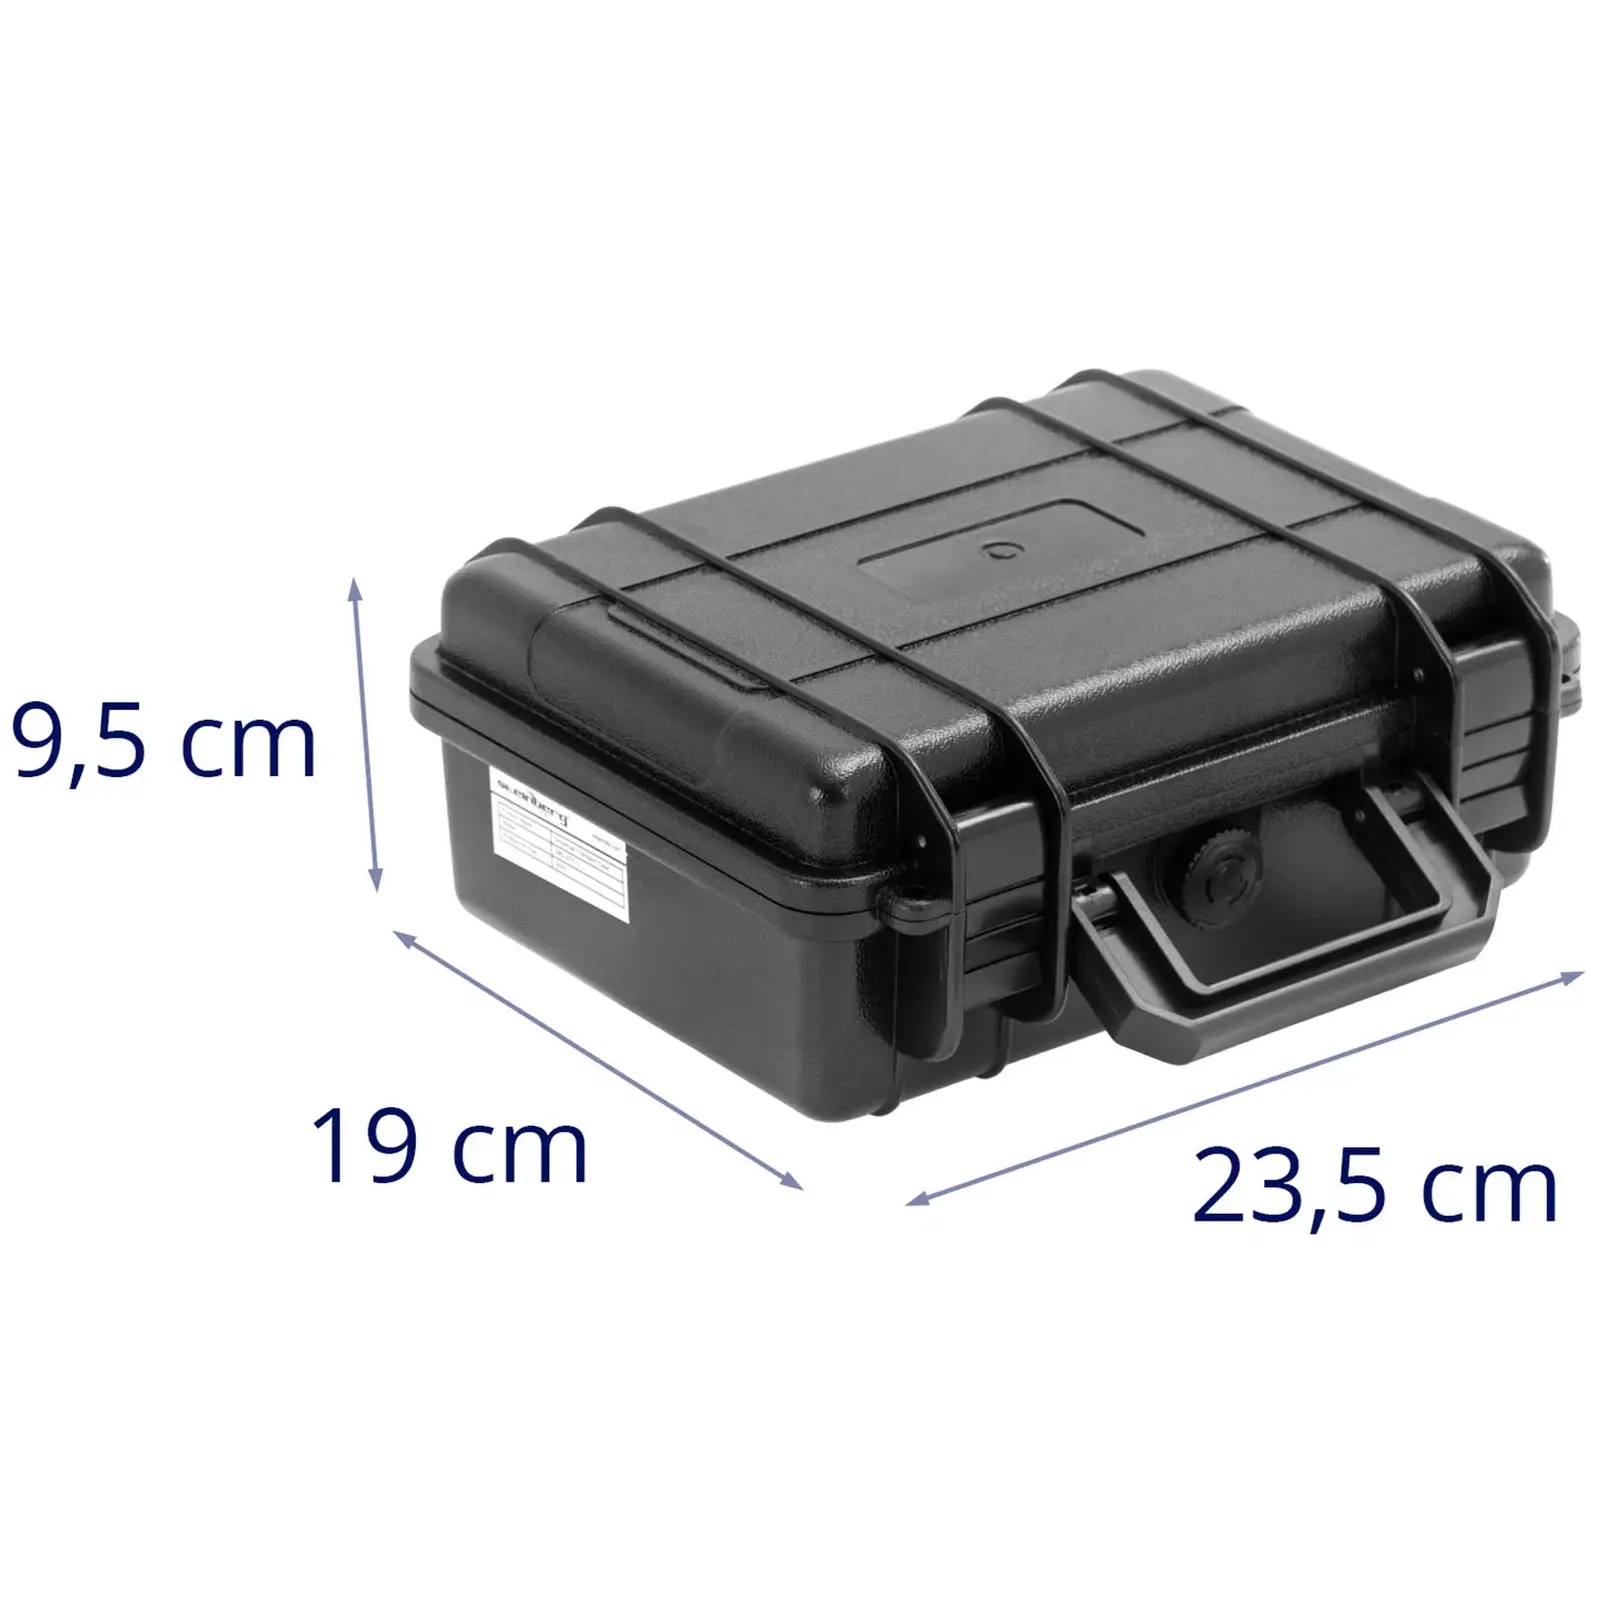 Mala de transporte com esponja - impermeável - 2 l - preto - 23,5 x 18,8 x 9,6 cm